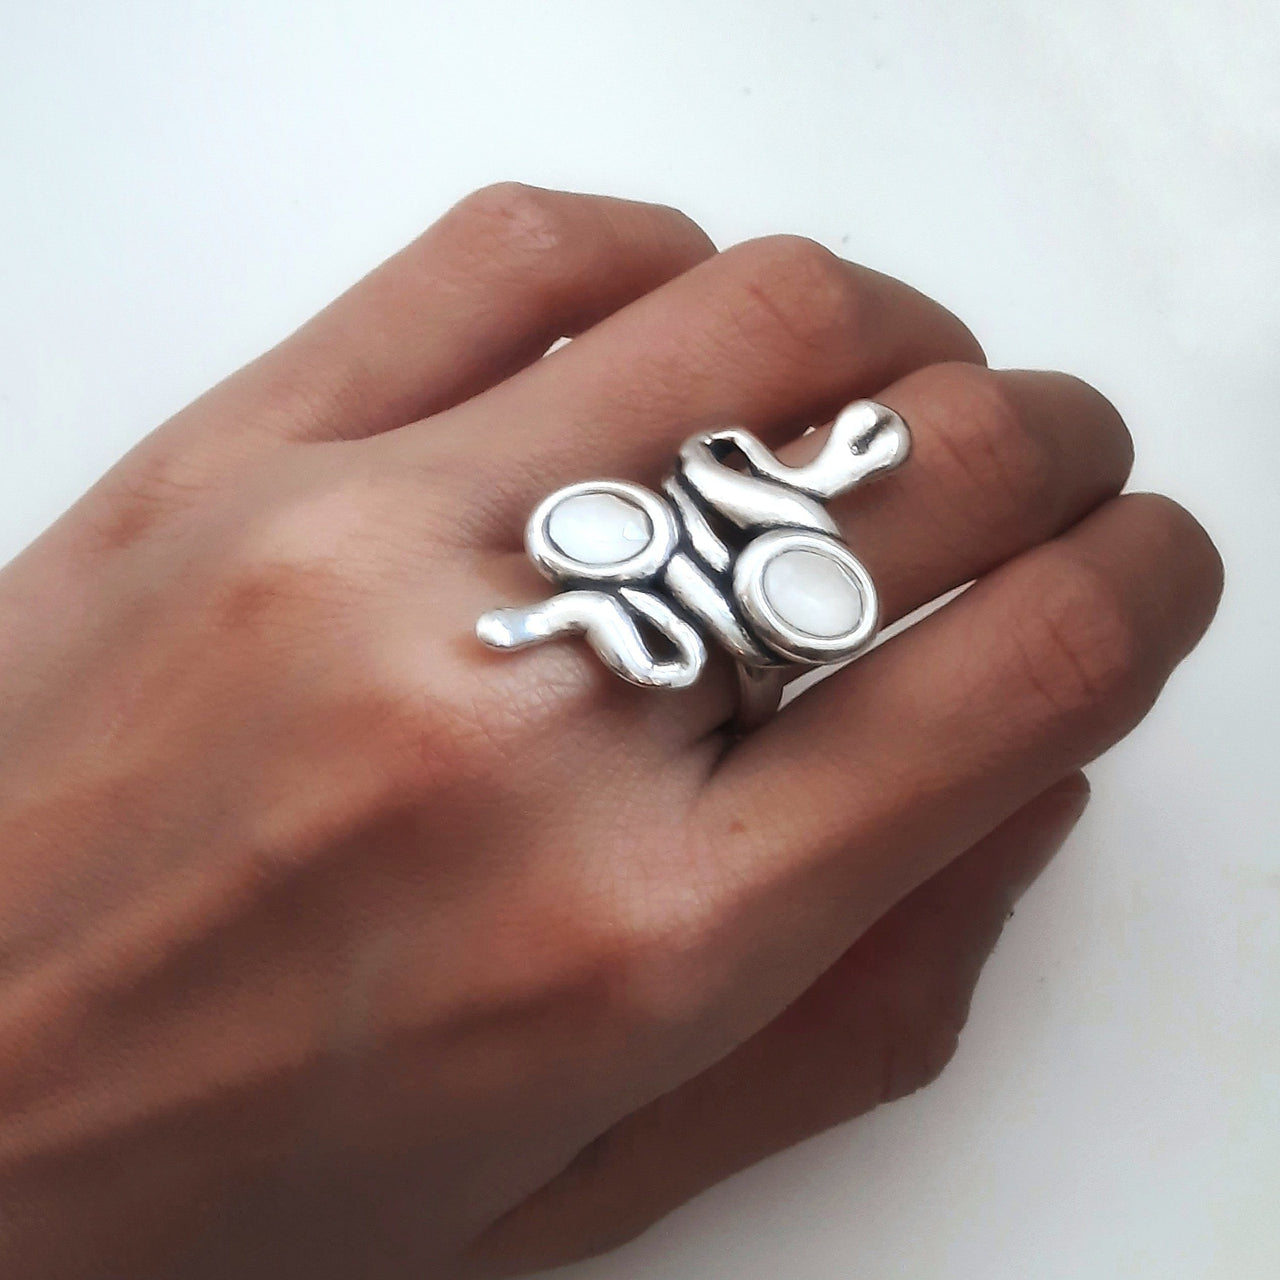 Schlangen Ring Silber mit Steinen - Serpiente Ringe KOOMPLIMENTS